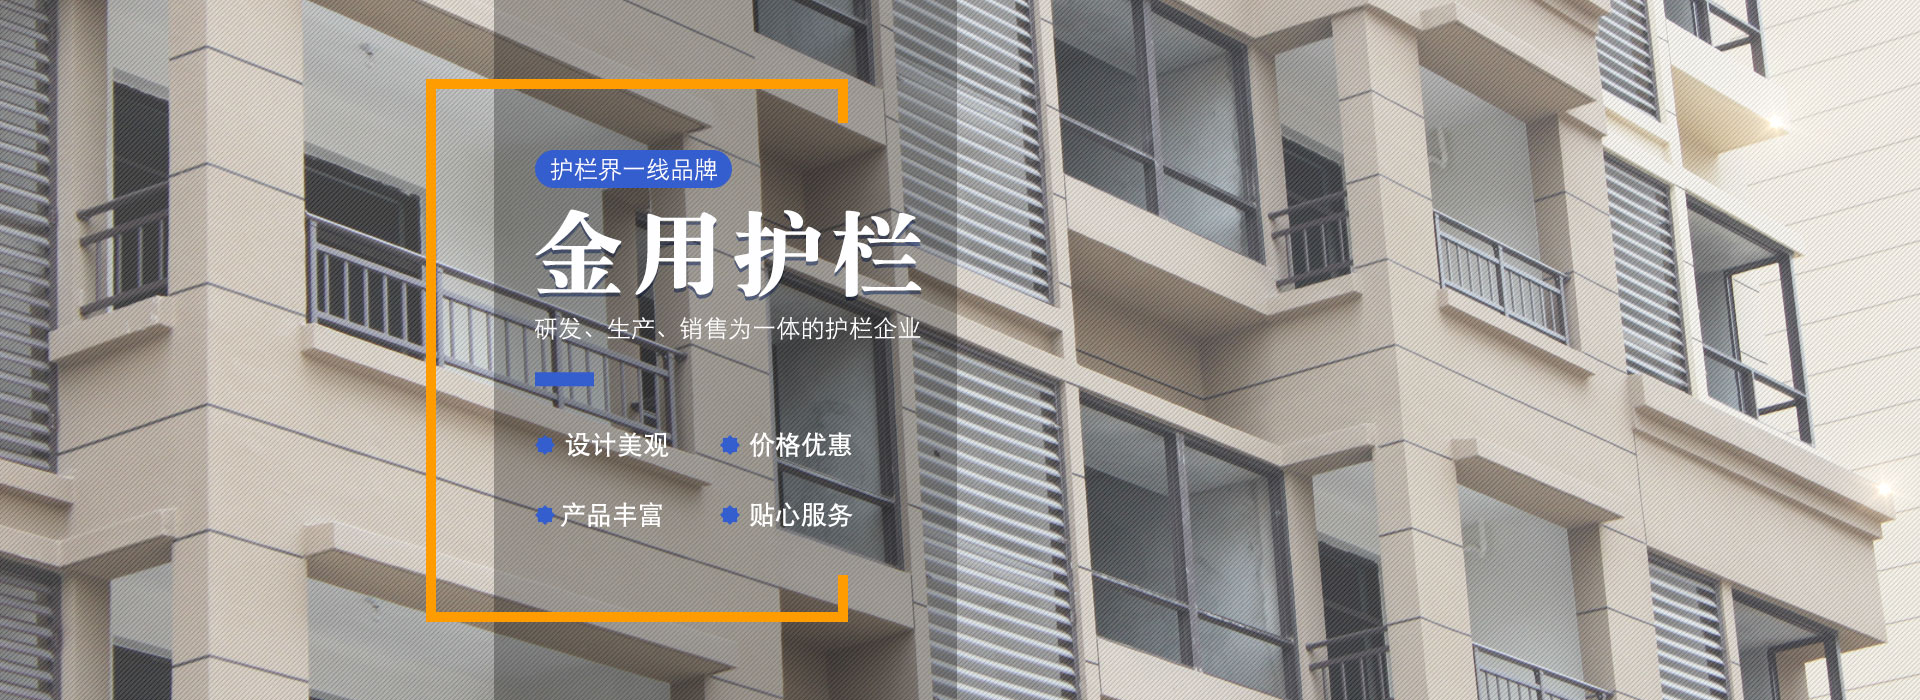 安徽j9游会真人游戏第一品牌护栏厂家官方网站